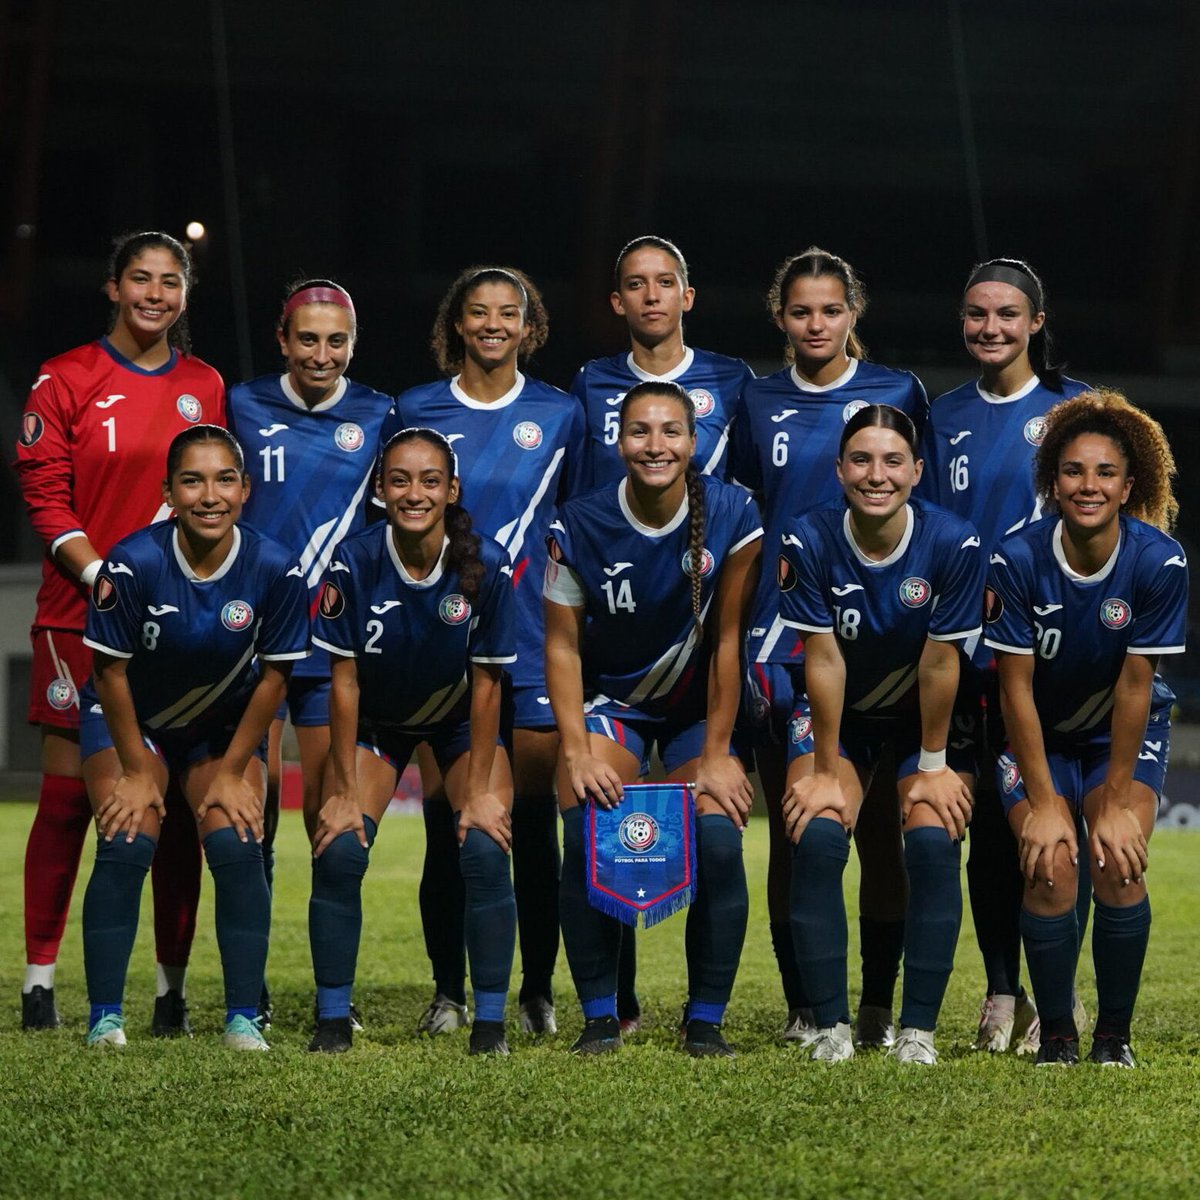 ¡El Huracán Azul está en la Copa Oro Femenina!

Puerto Rico 🇵🇷 se clasificó a la fase de grupos tras derrotar a Haití por 0-1 con un solitario gol de penalti de Jill Aguilera.

Estaran emparejados con Brasil 🇧🇷, Panamá 🇵🇦 y Colombia 🇨🇴 en el Grupo B.